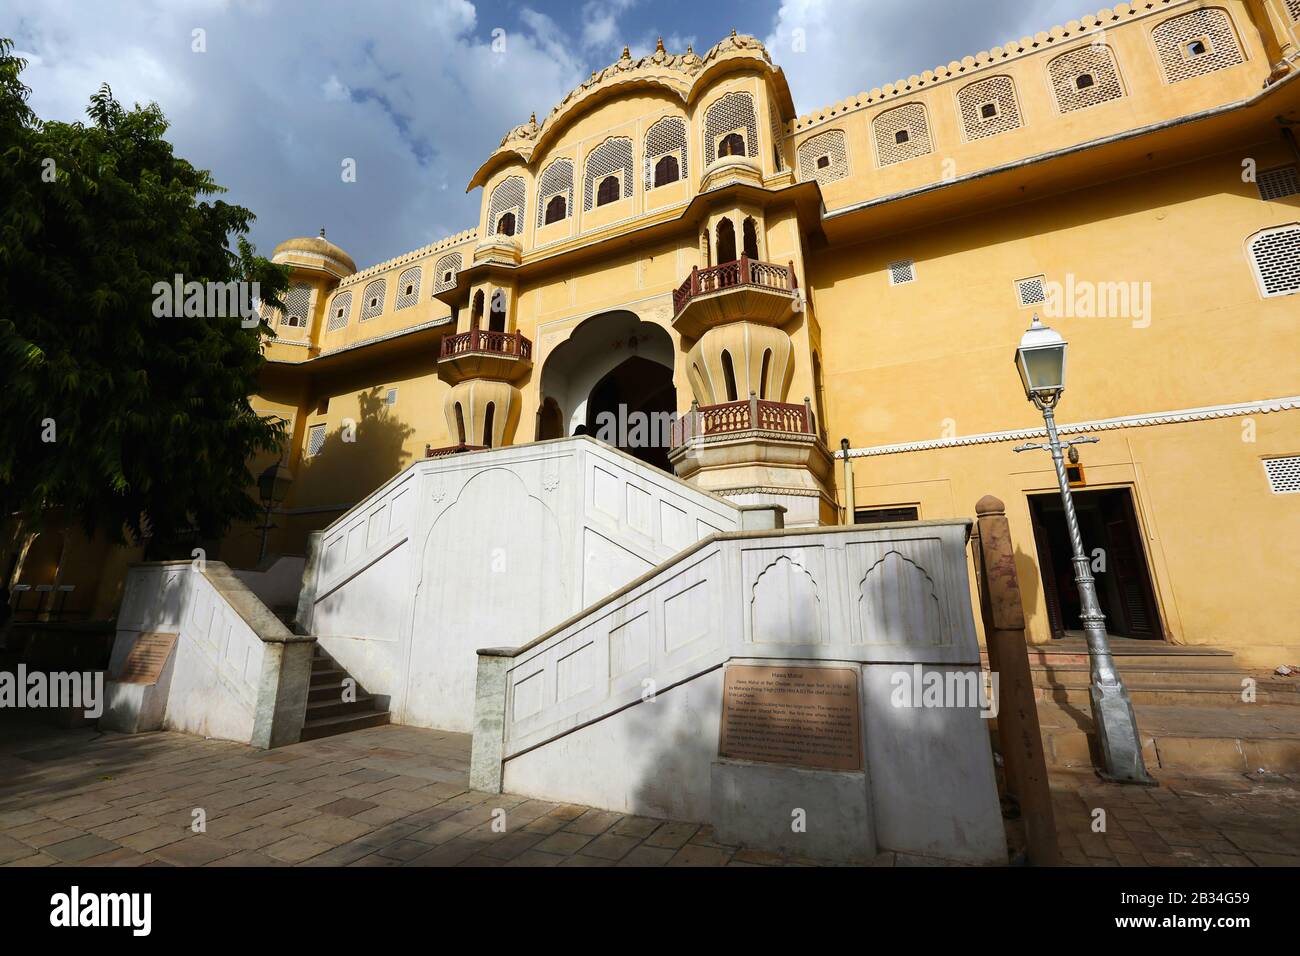 Palace of the Winds, Hawa Mahal, Jaipur, Rajasthan, India Stock Photo